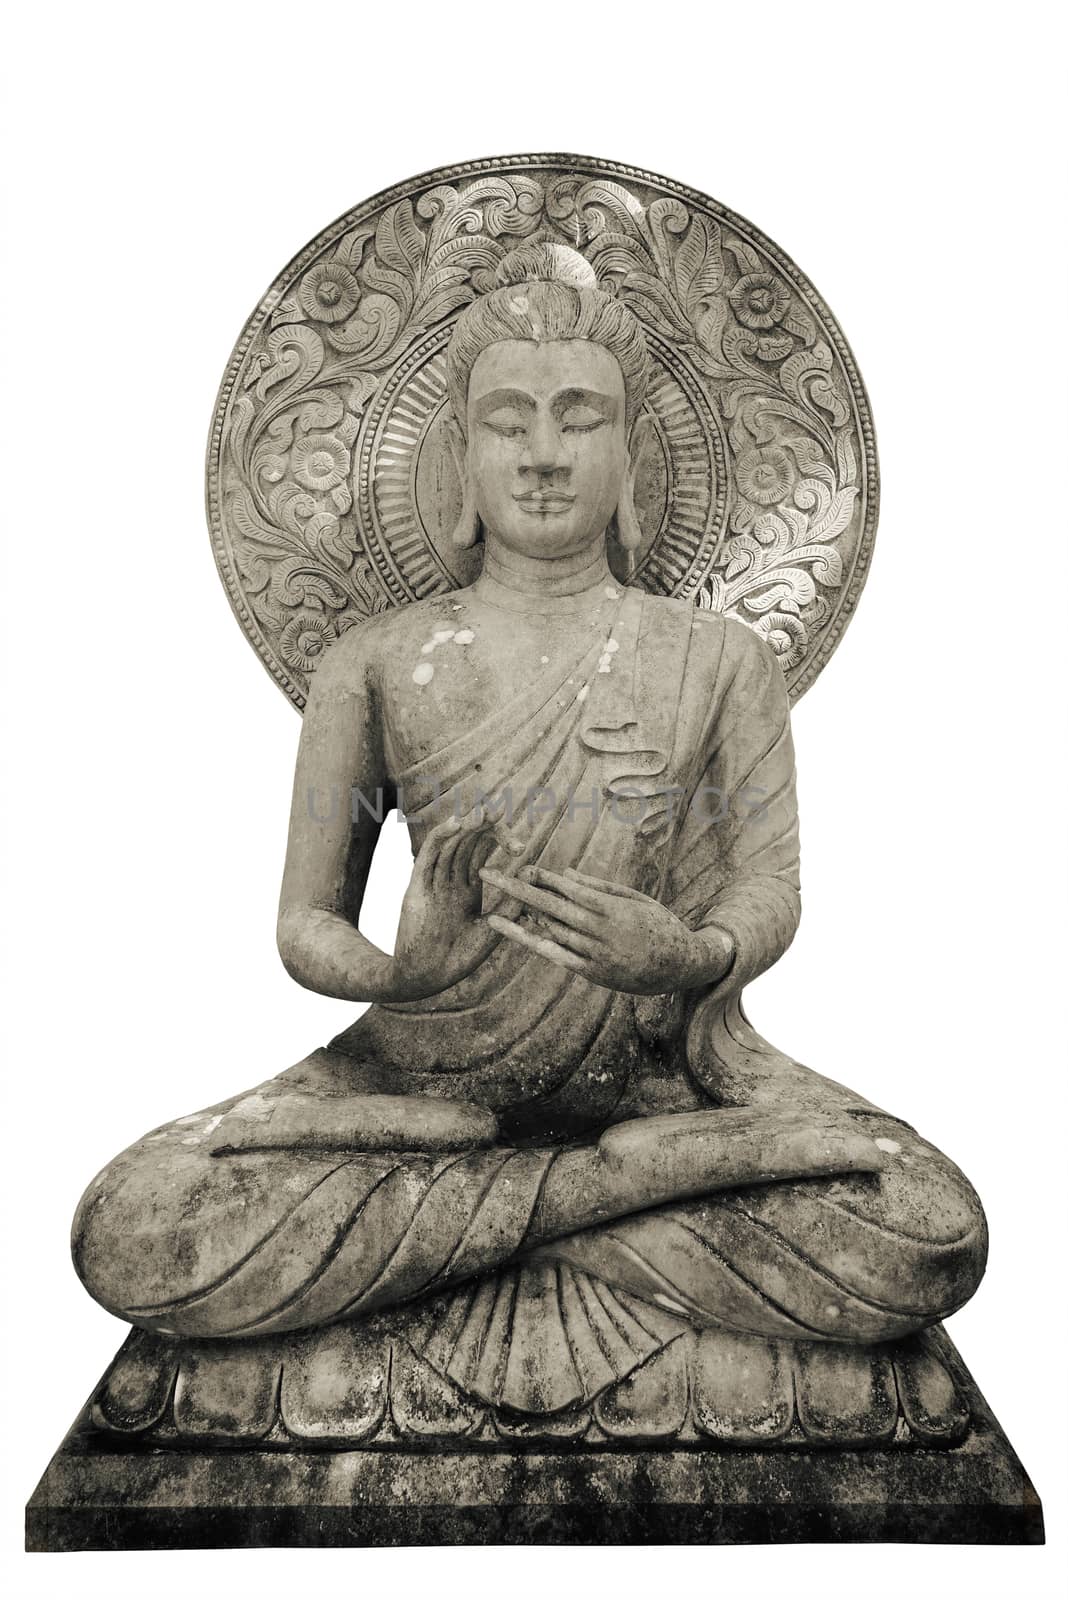 Buddha statue on white background, isolated.